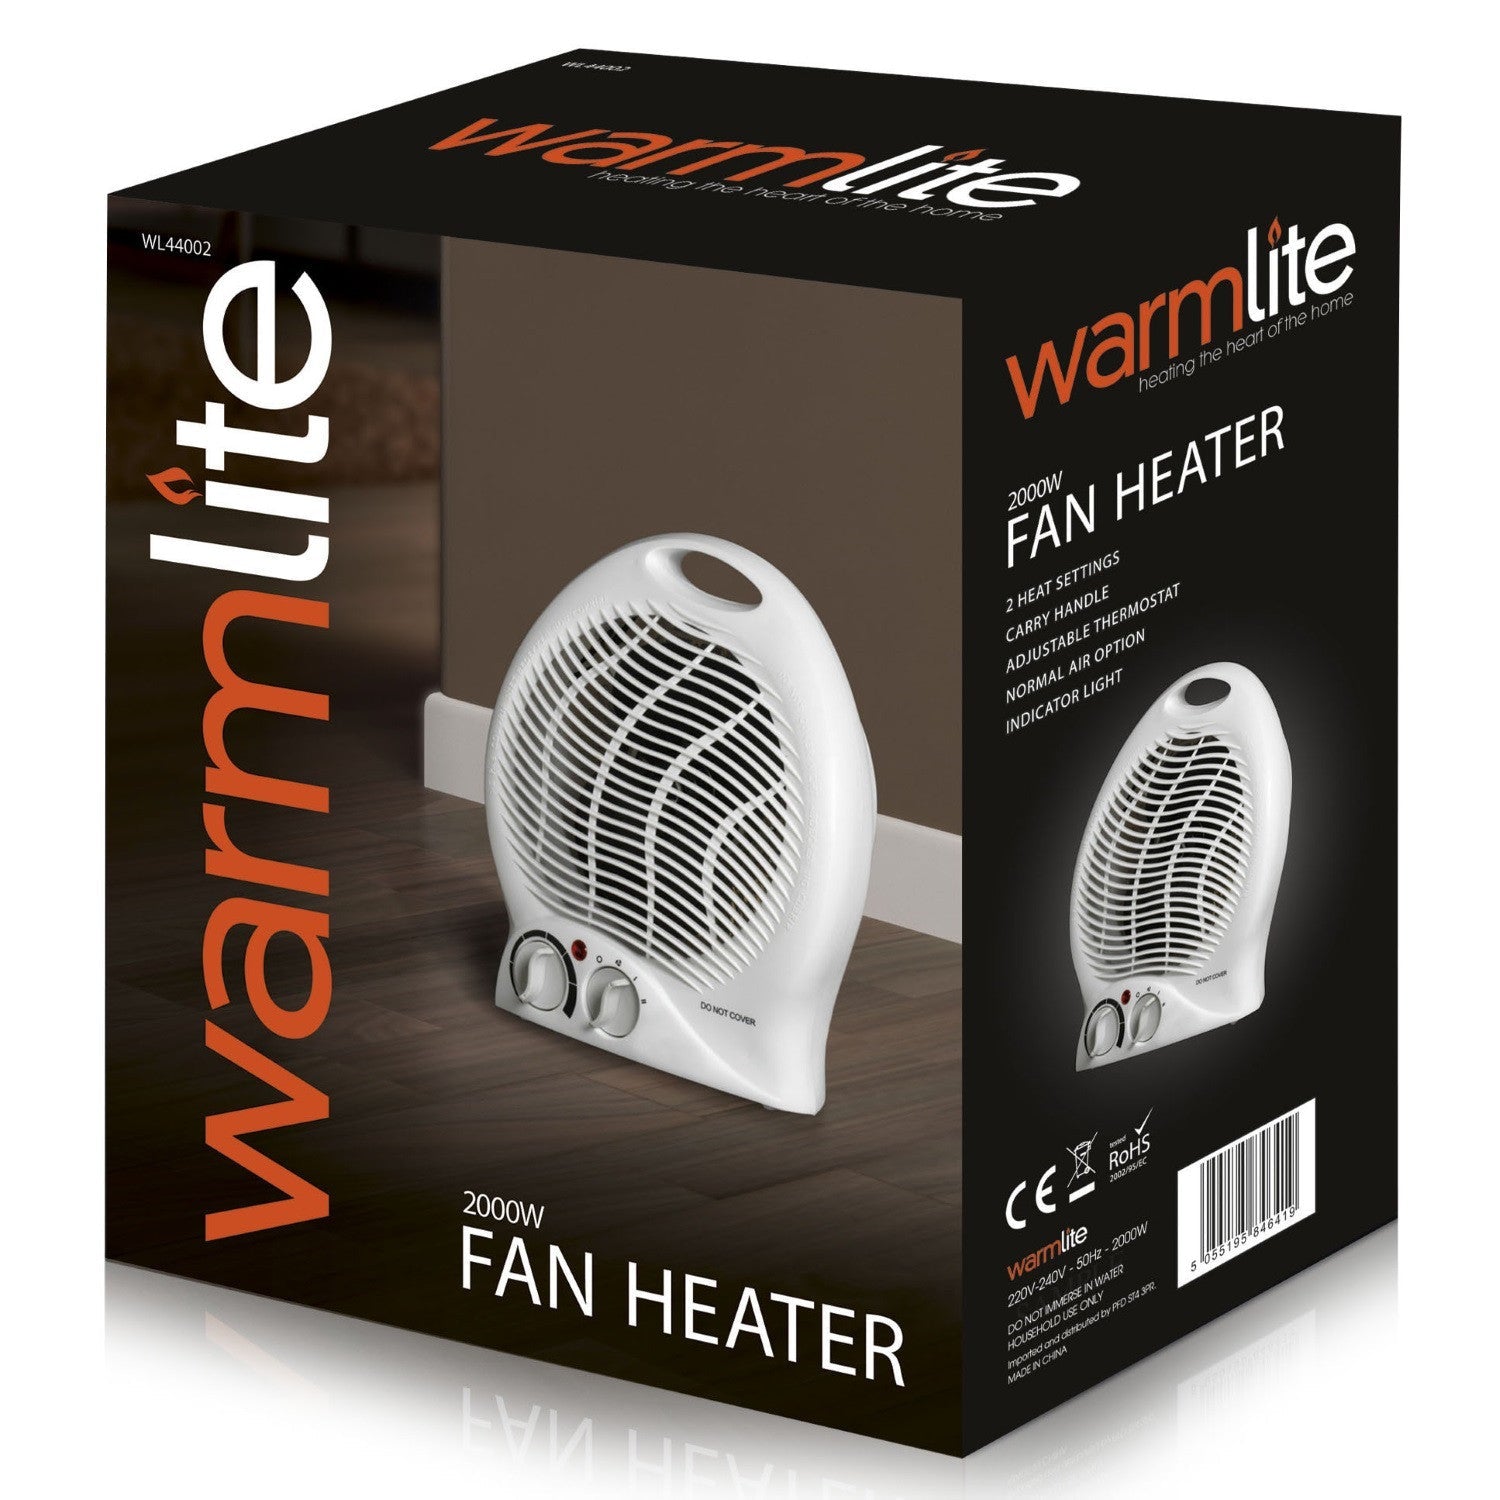 Warmlite WL44002 Upright Fan Heater 2000w - Premium Fan Heaters from warmlite - Just $18.99! Shop now at W Hurst & Son (IW) Ltd